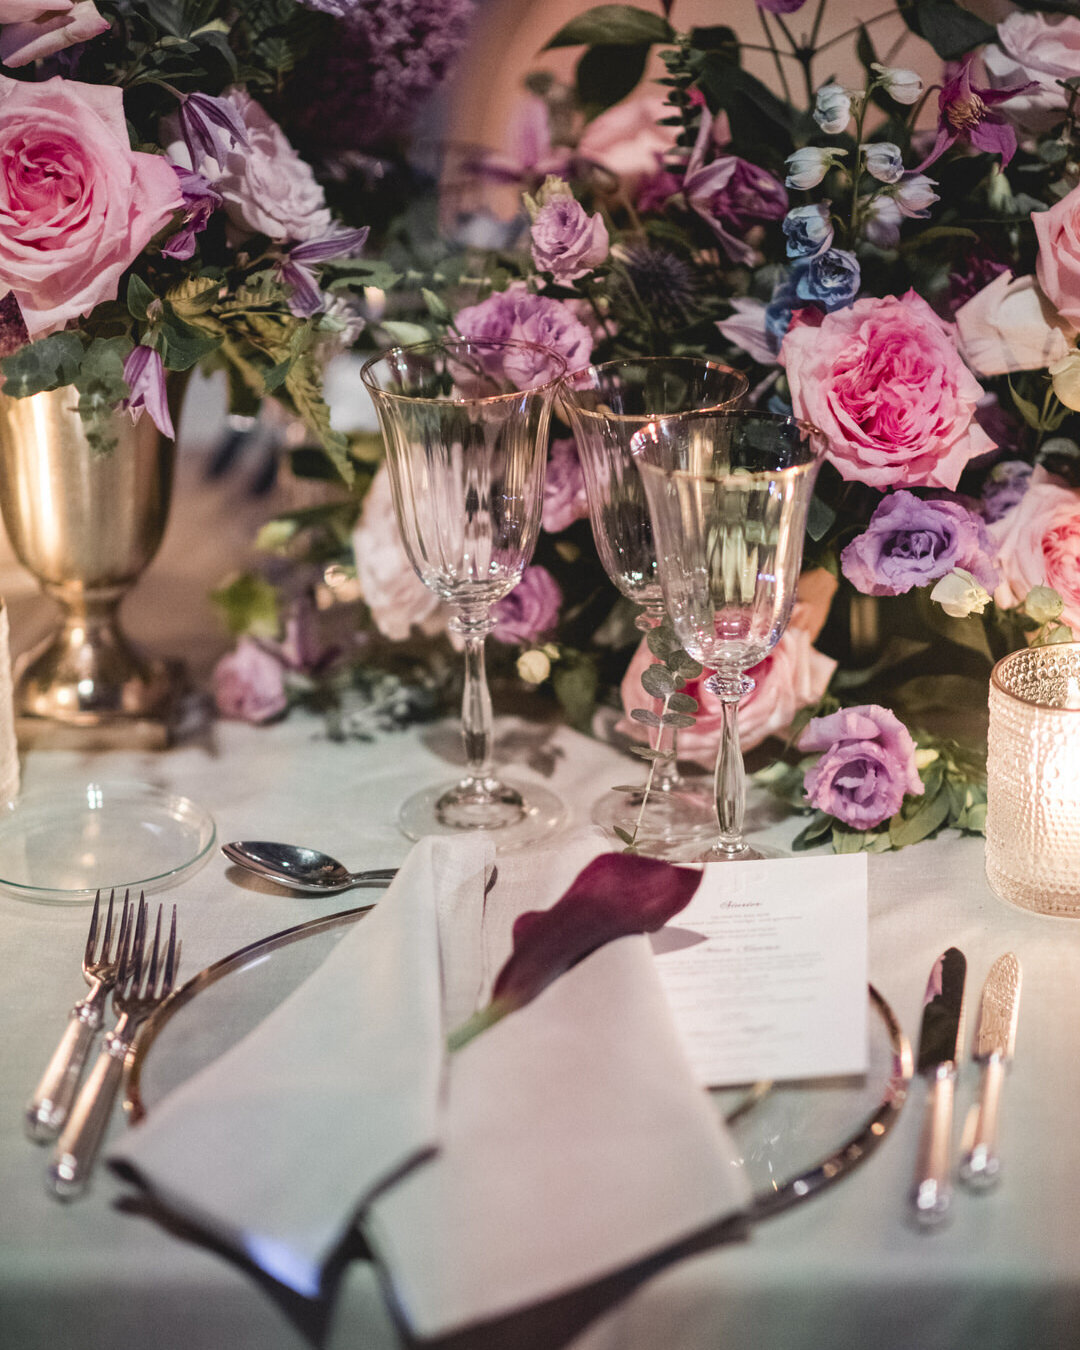 Paris Destination Wedding at Chateau de Chantilly by Alejandra Poupel Events details plate dinner table